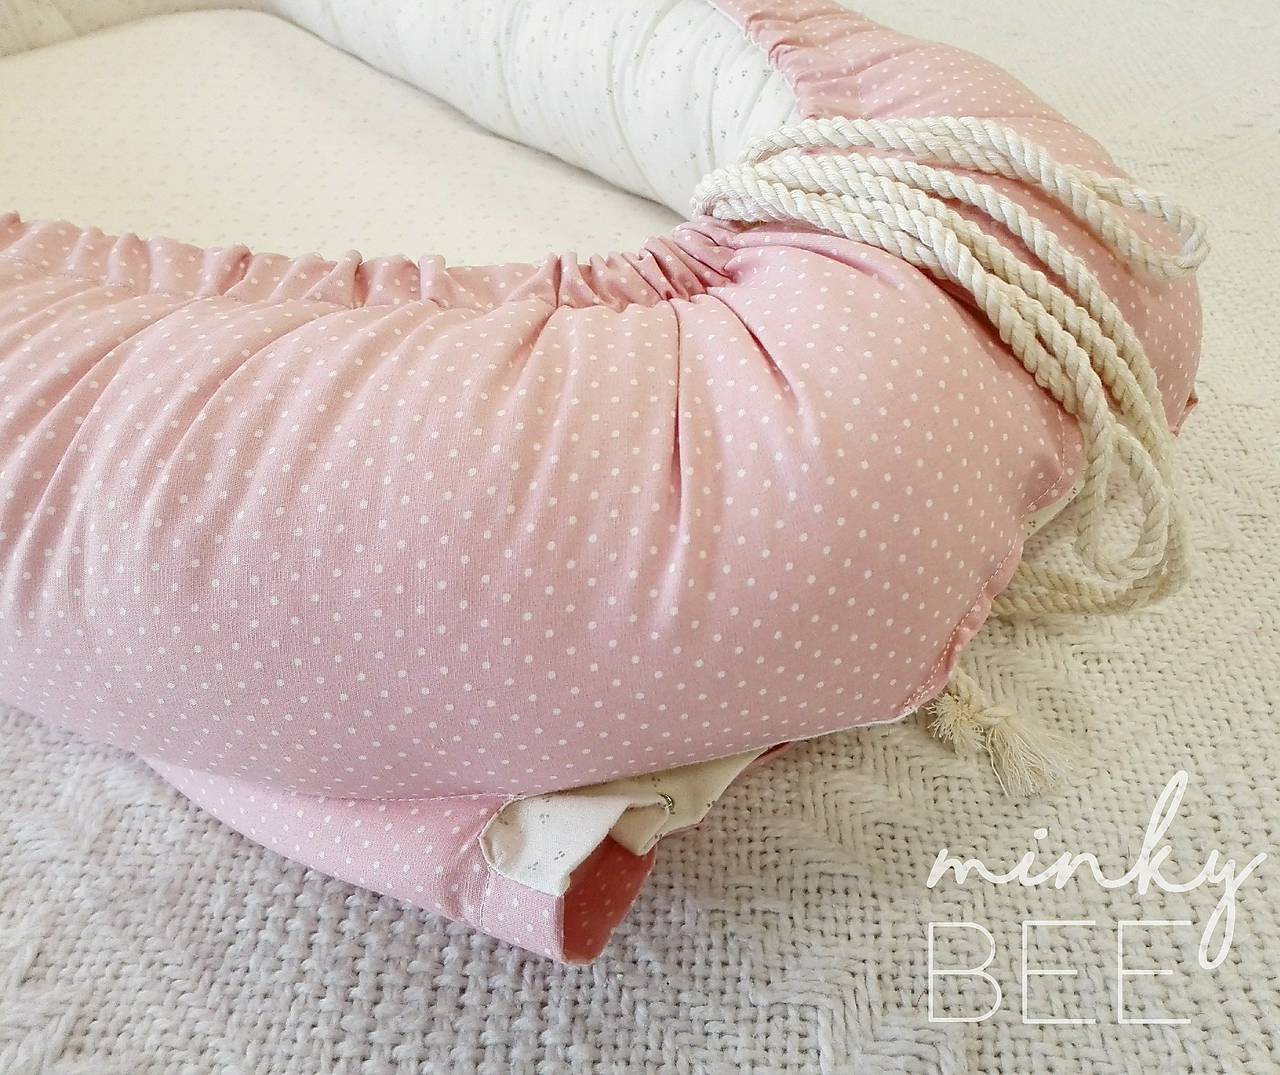 POSLEDNÝ KUS! Luxusné hniezdo pre novorodenca z BIO bavlny